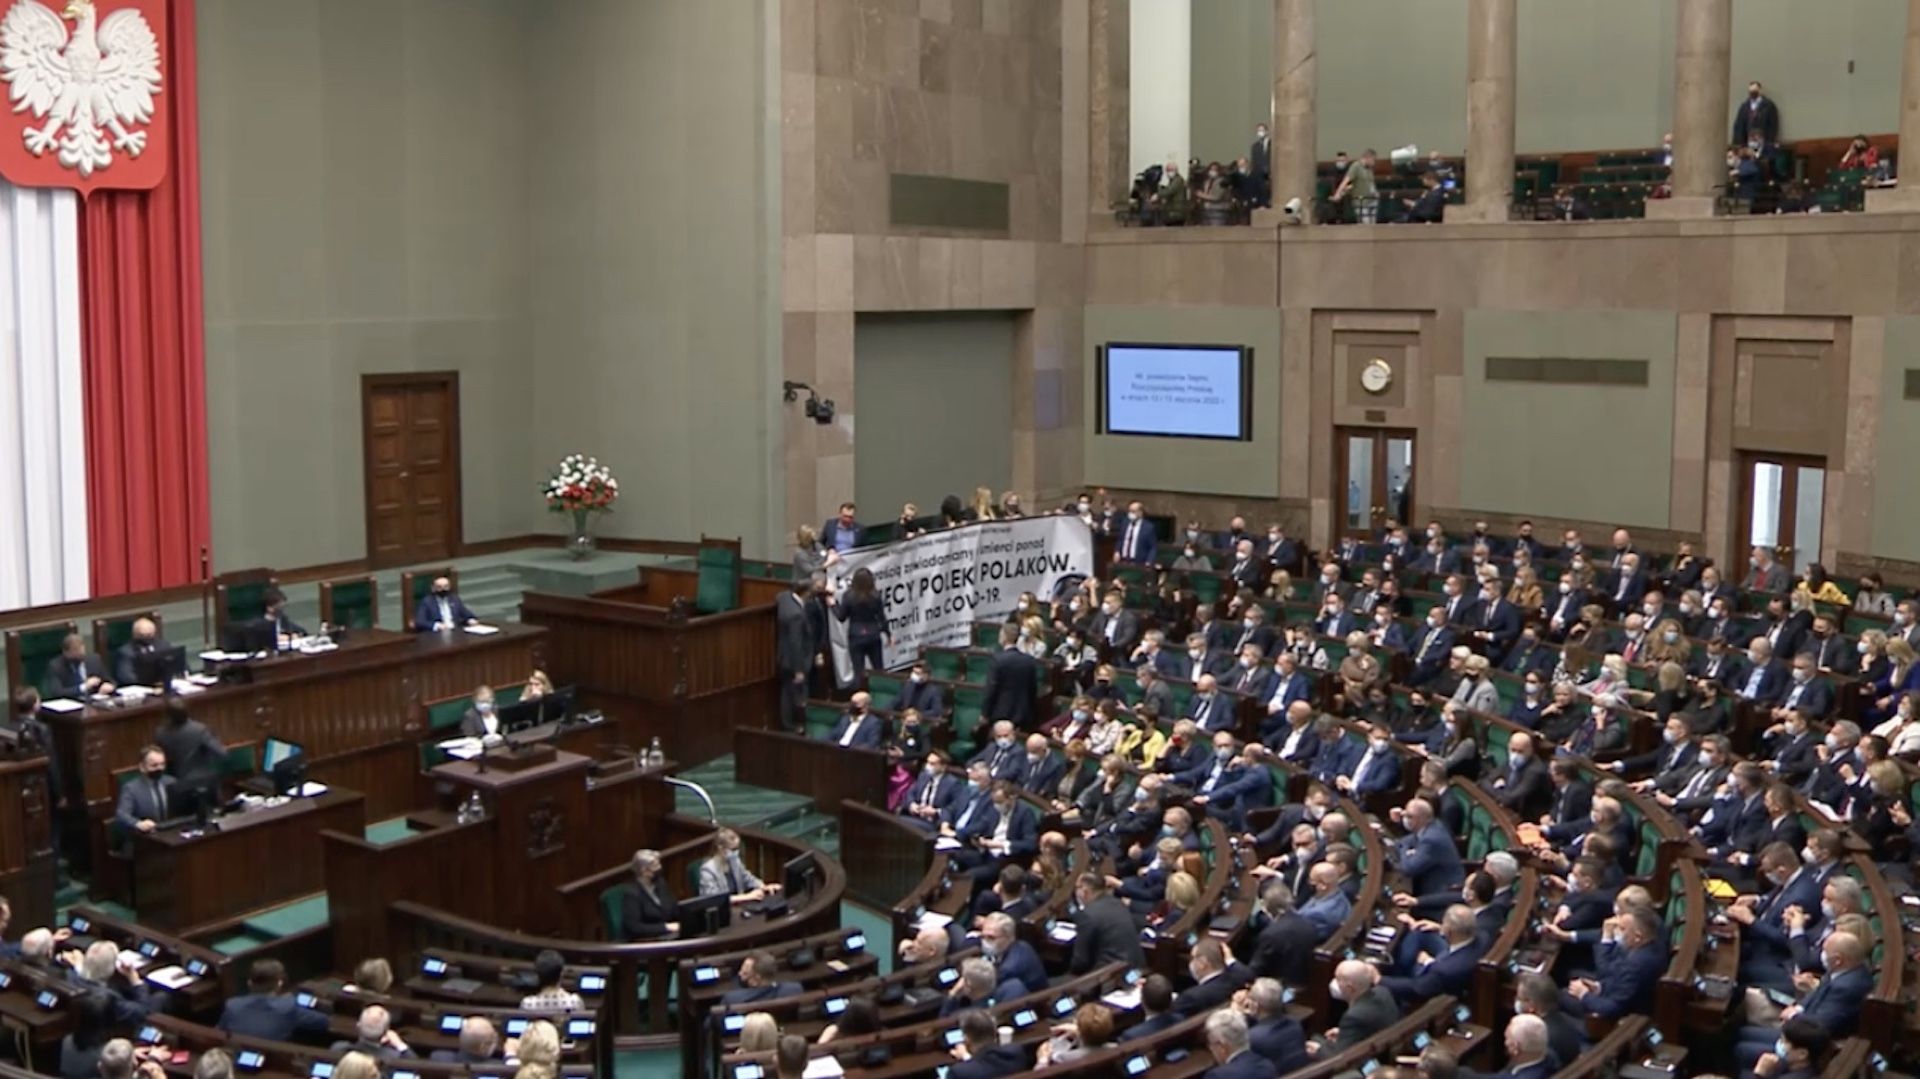 Wielki baner na sali plenarnej w Sejmie, burzliwe obrady z żądaniem wobec rządu PiS ws. szczepień